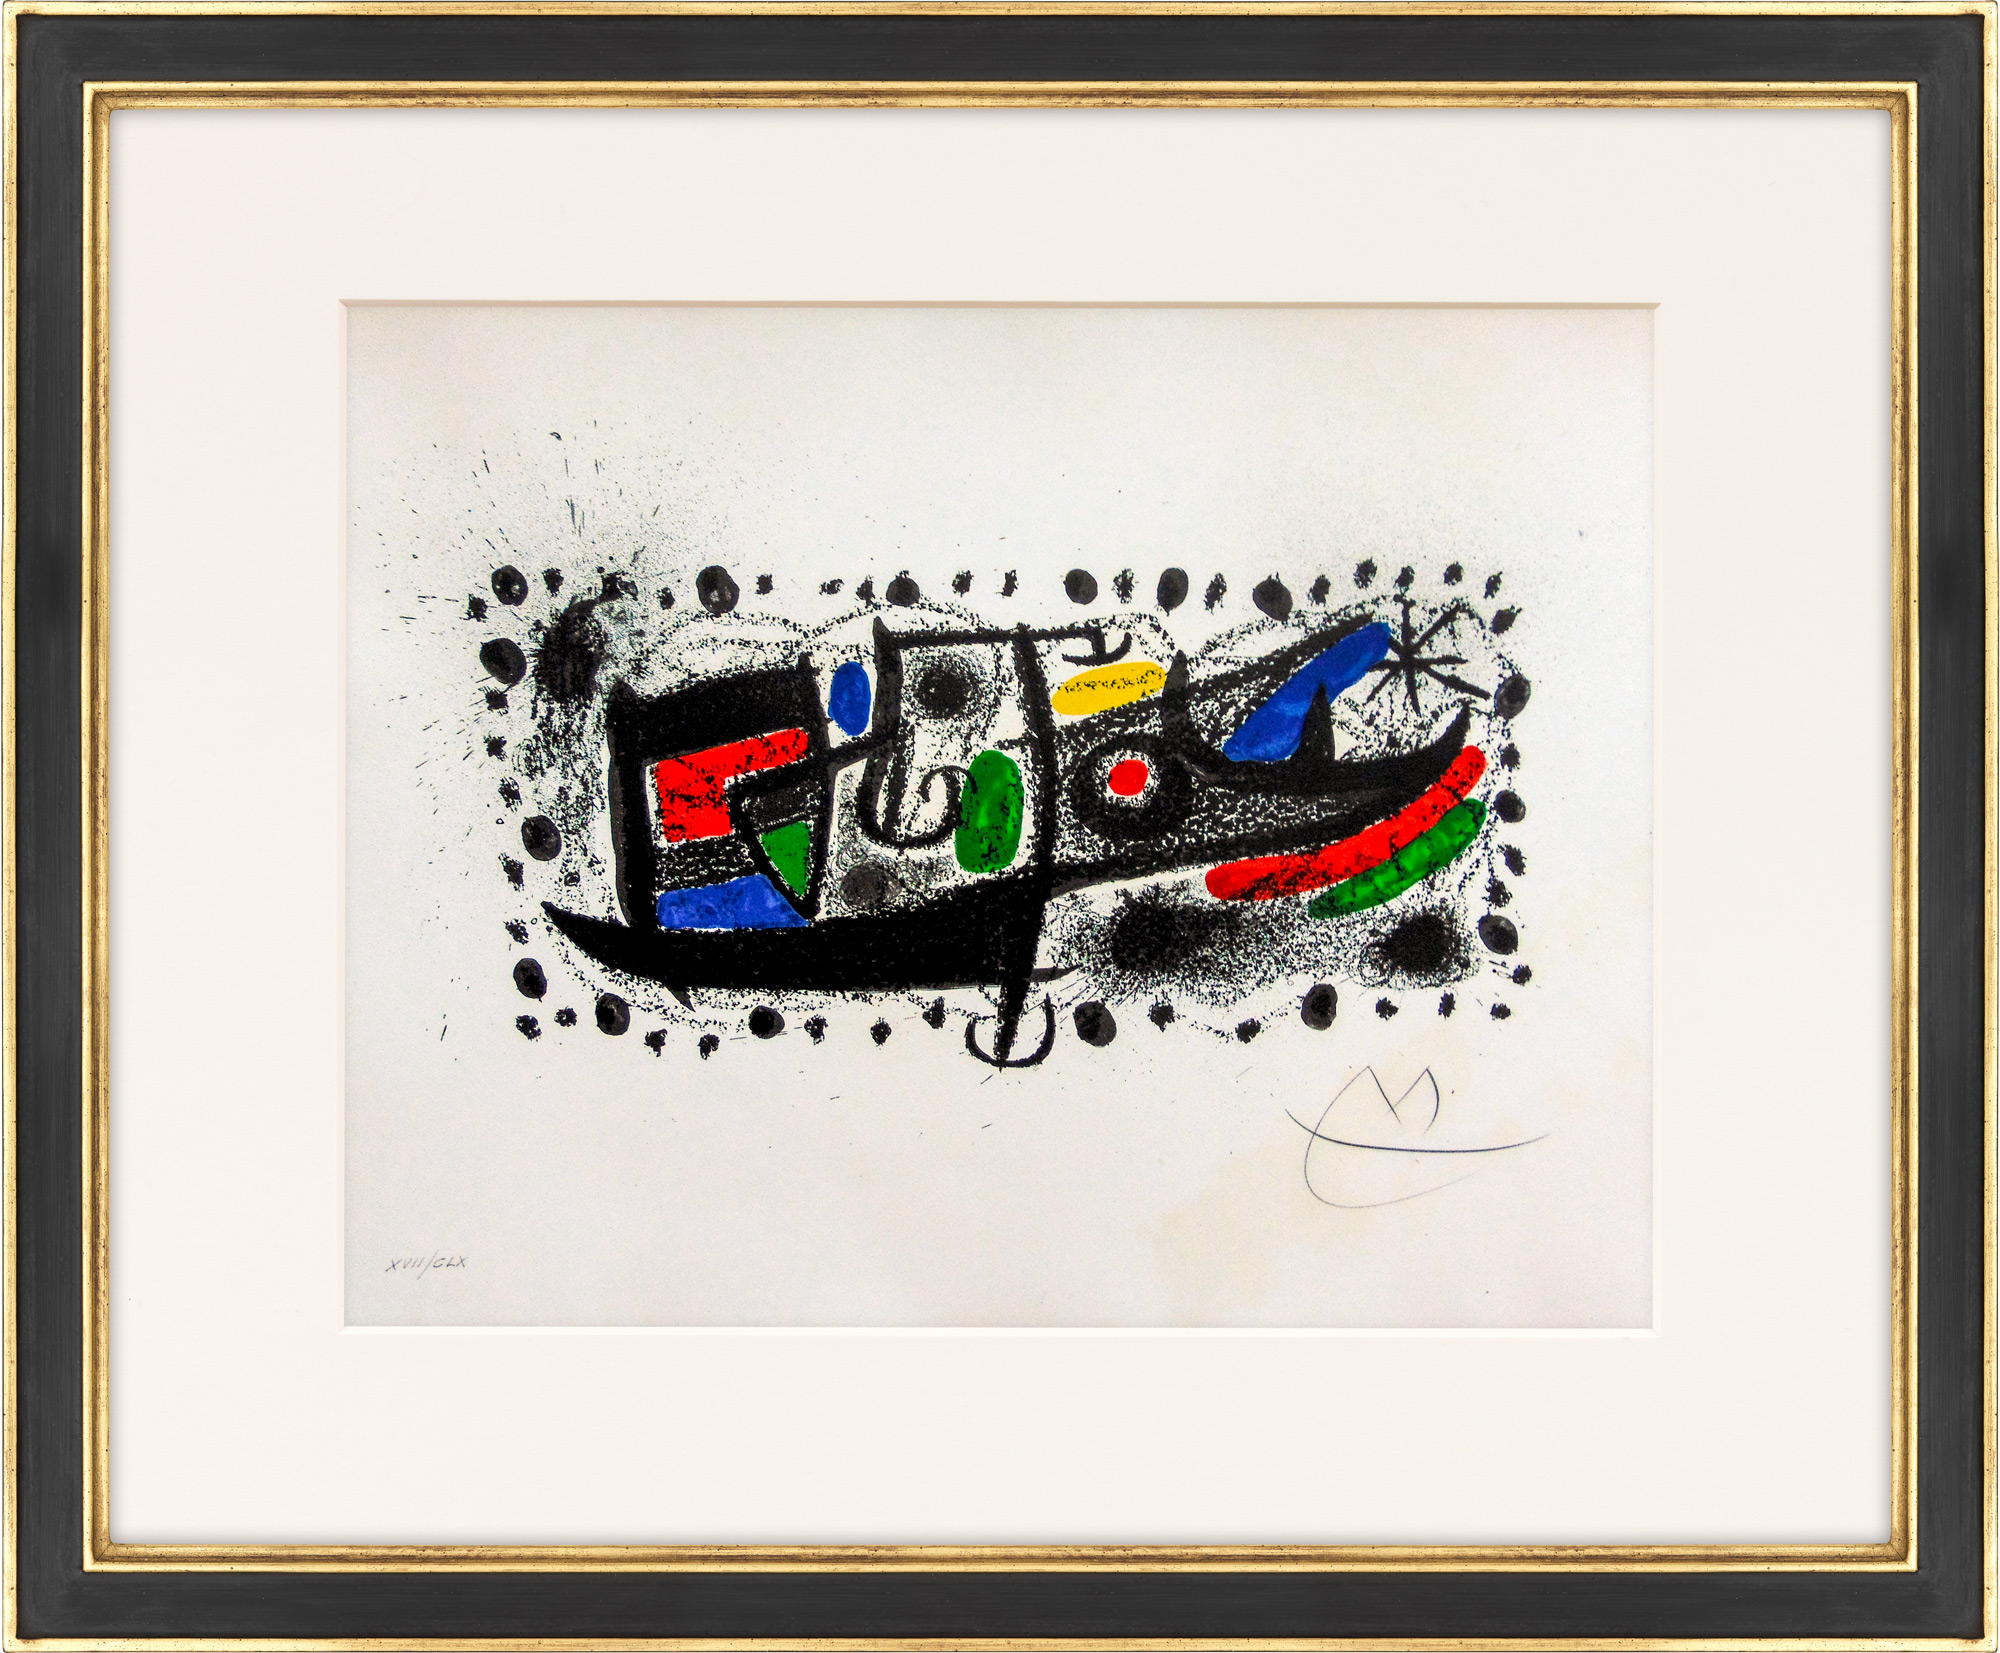 Bild "Joan Miró and Catalonia" (1970) von Joan Miró